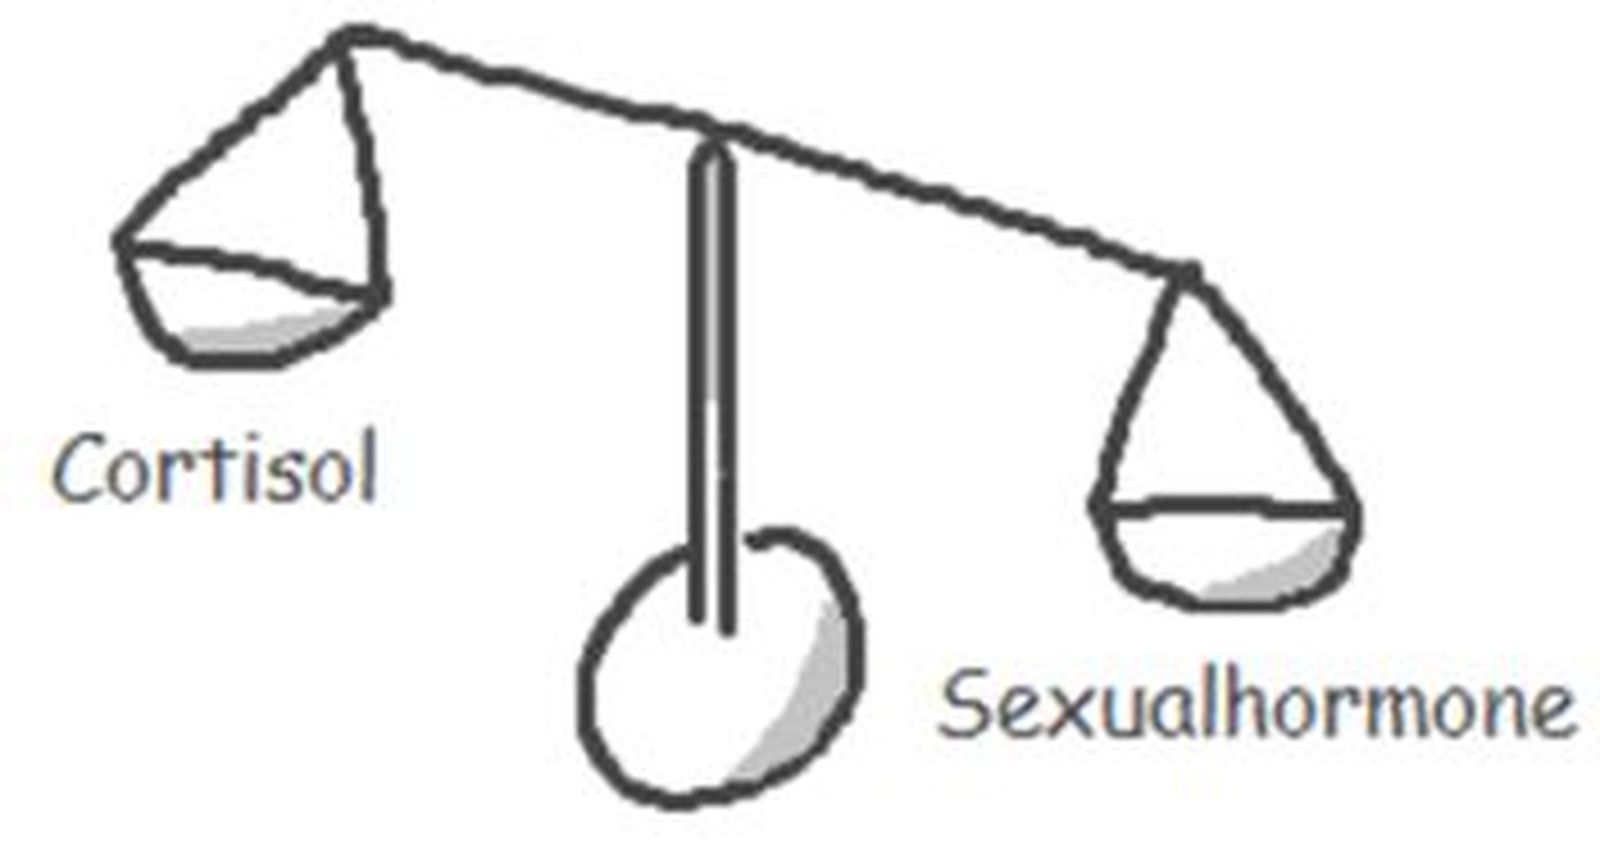 Schematische Darstellung des Stresshormons Cortisol mit den Sexualhomonen als Gegenspieler